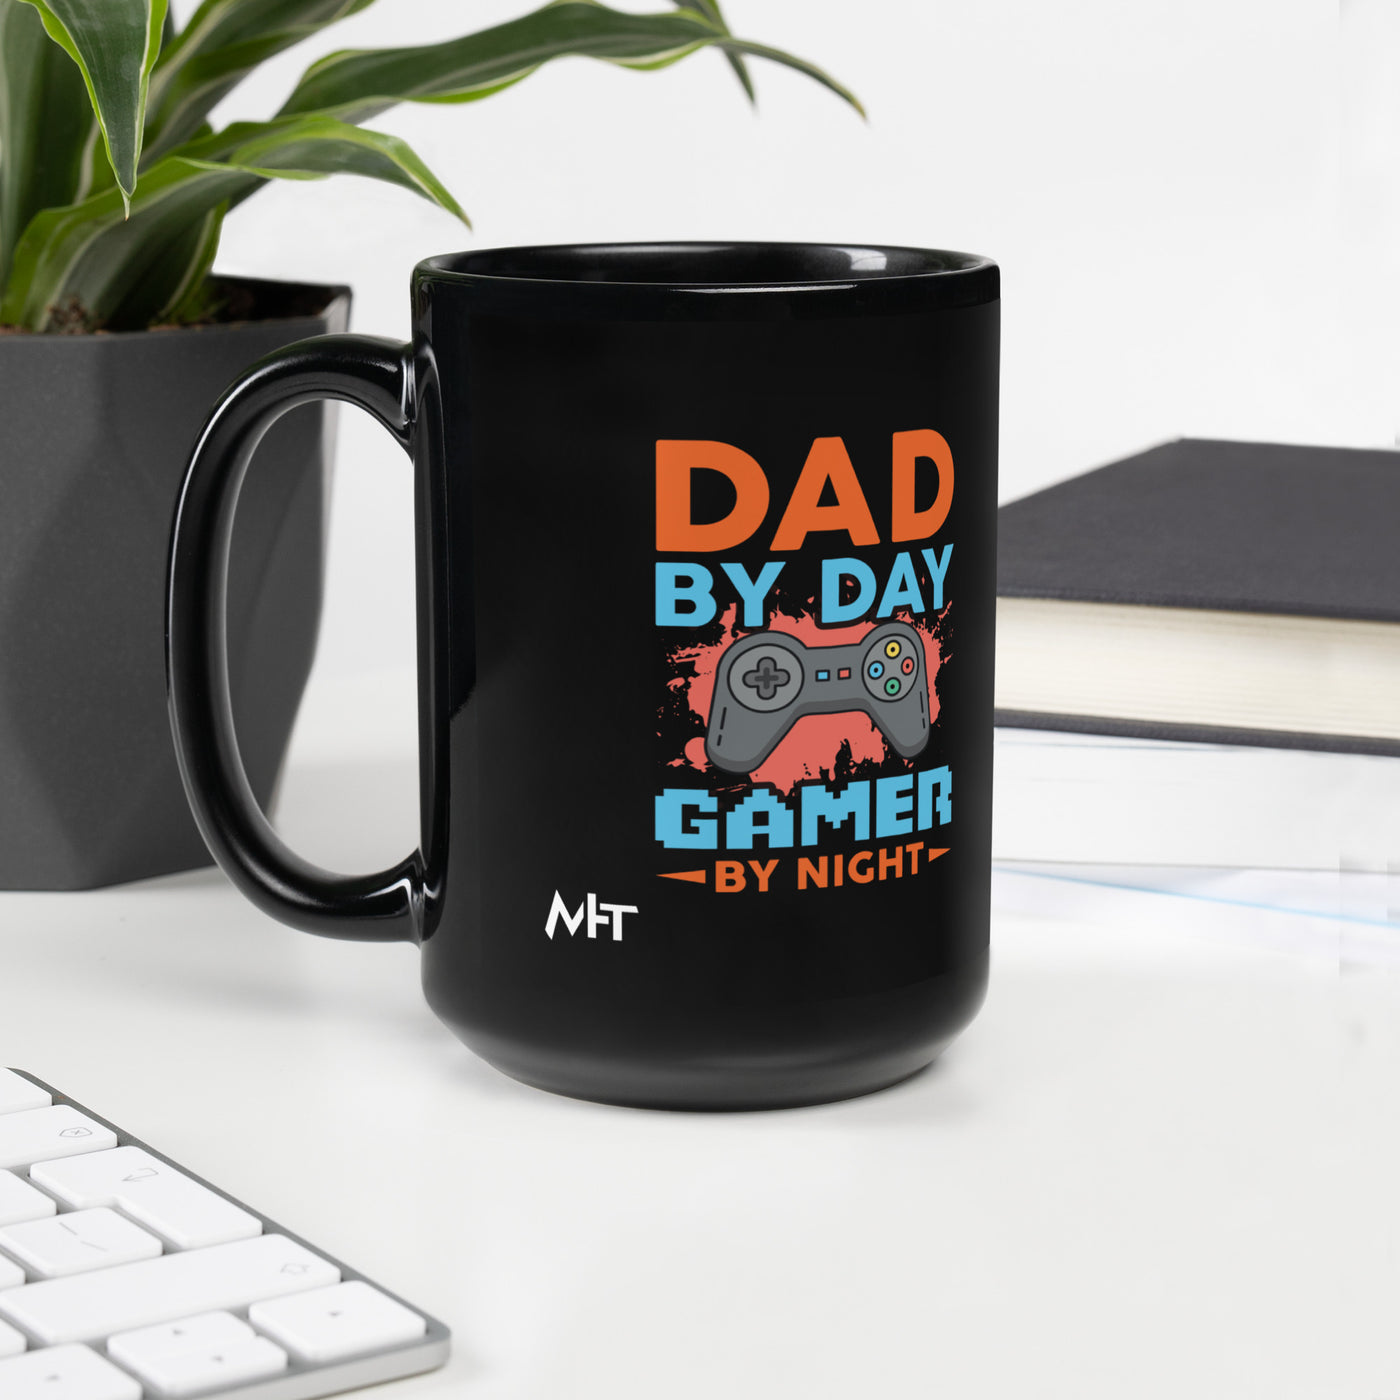 Dad by Day, Gamer by Night - Black Glossy Mug